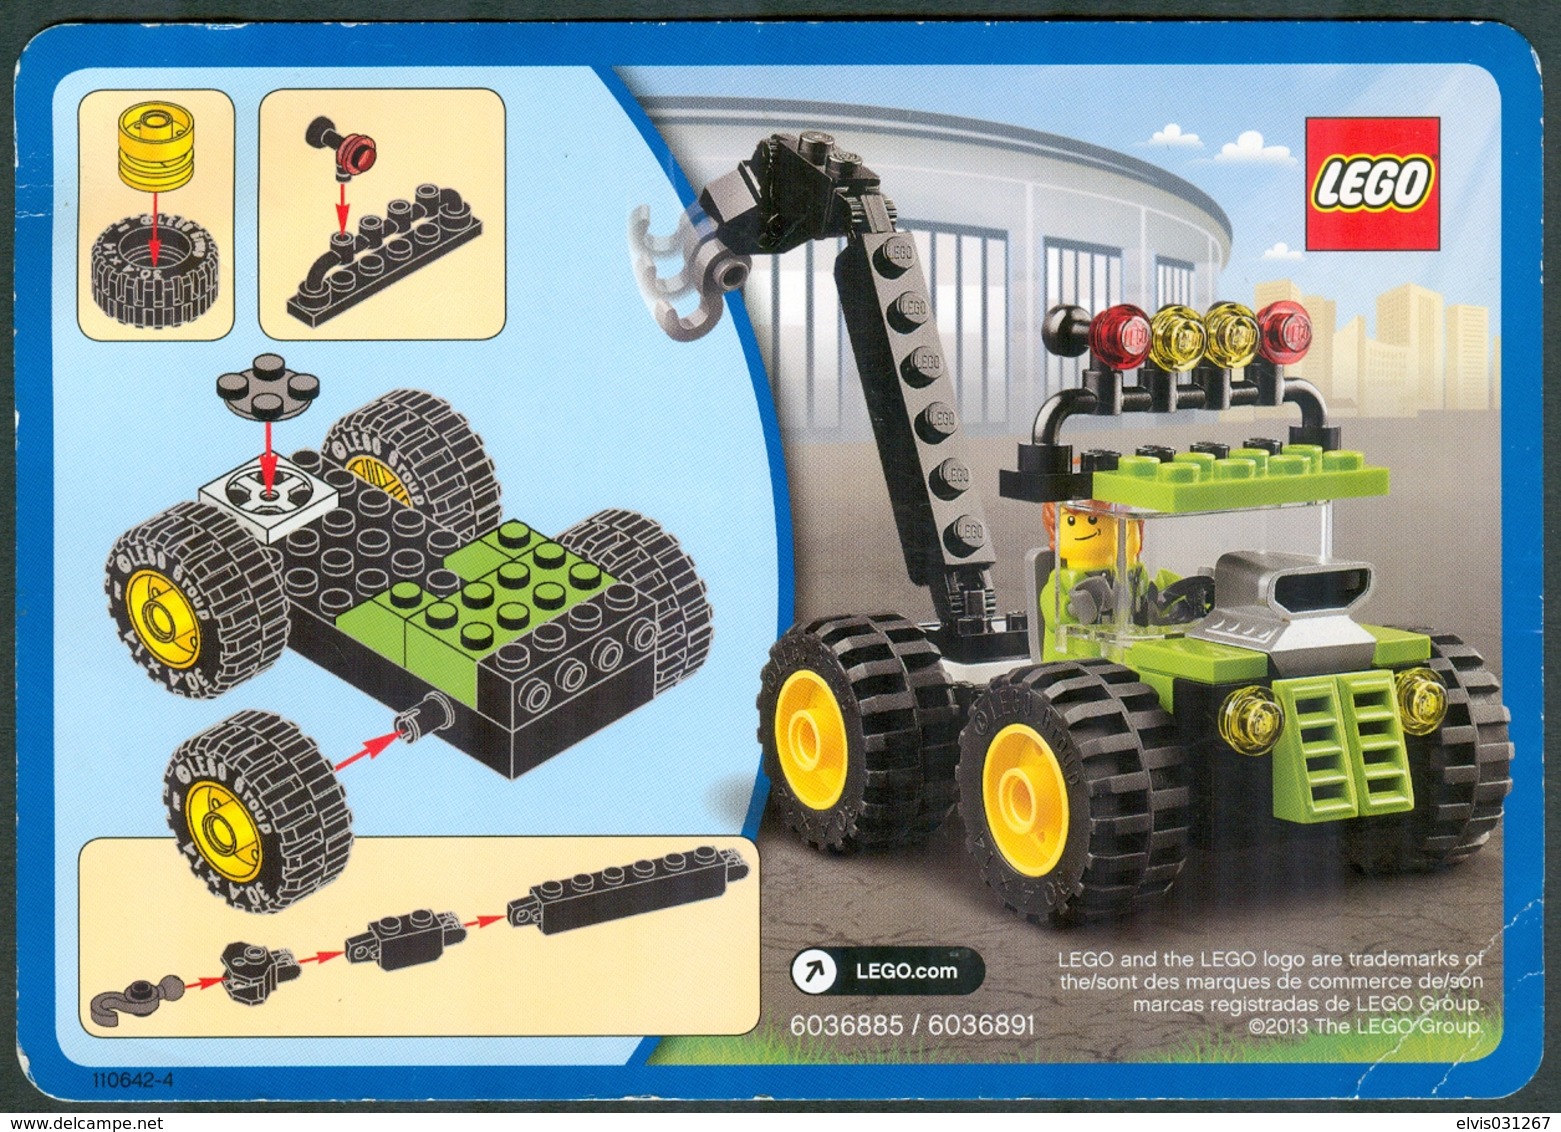 LEGO - 6036885 / 6036891 EASY TO BUILD CARD - Original Lego 2013 - Catalogs